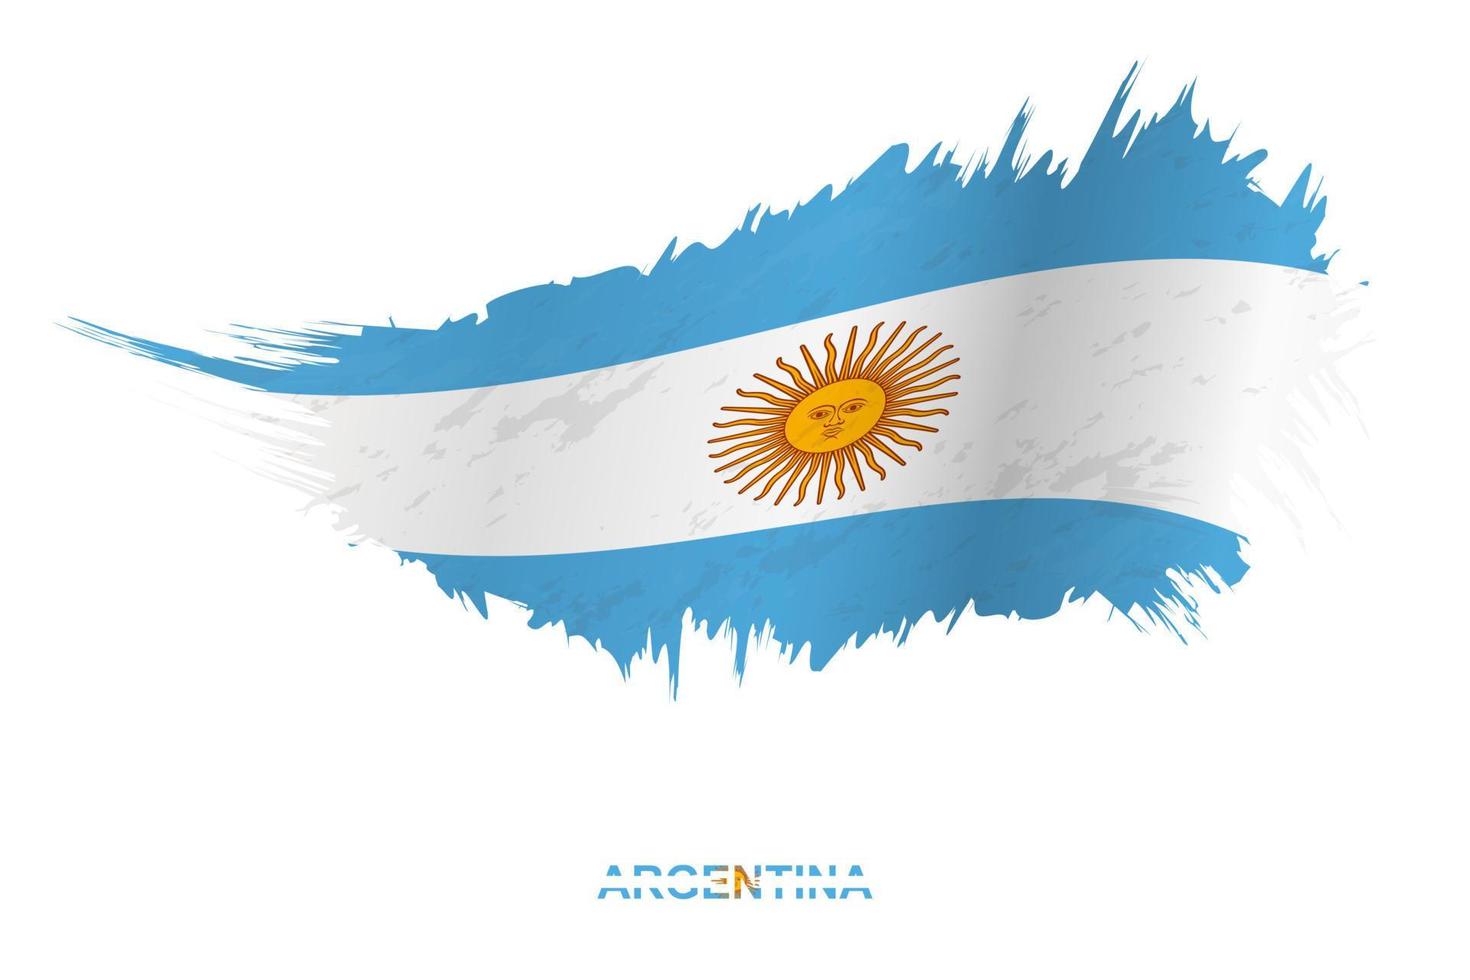 bandeira da argentina em estilo grunge com efeito acenando. vetor